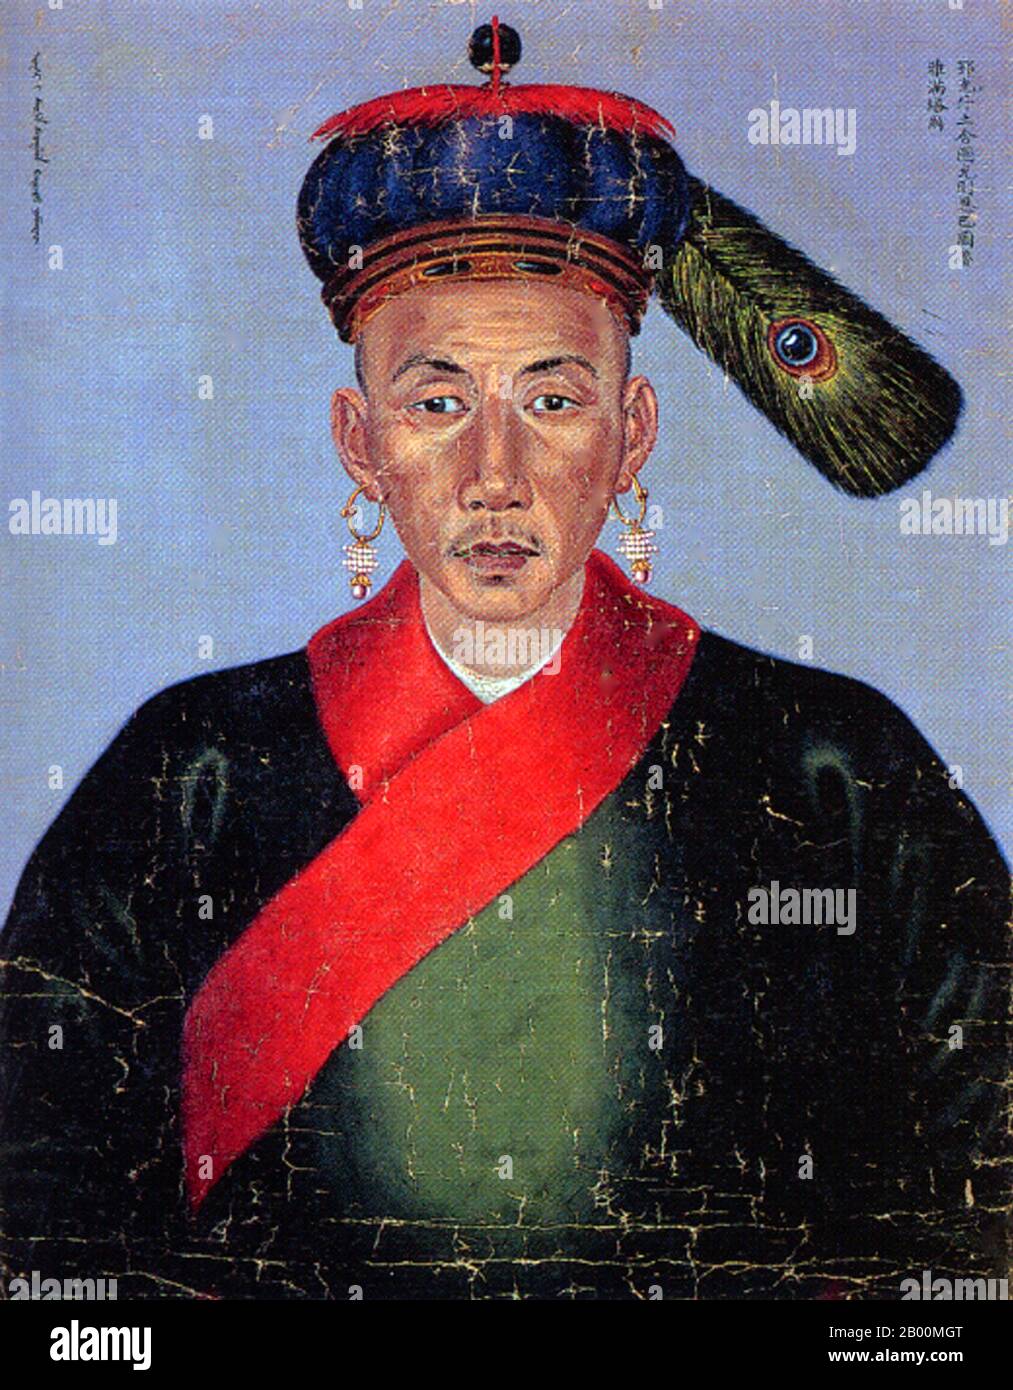 Cina: Yamantar, un ufficiale militare di Qing del regno di Qianlong (1735-96). I ritratti della corte imperiale di Qing degli ufficiali militari di Manchu, conosciuti come Bannermen, metà del XVIII secolo. Da quando la Cina fu portata sotto il dominio della dinastia Qing (1644 – 1683), i soldati della bandiera divennero più professionali e burocratizzati. Una volta che i Manchus presero il governo, non potevano più soddisfare le necessità materiali dei soldati garnishing e distribuendo il bottino; invece, fu istituito un sistema di stipendio, si classificarono, e i Bannermen divennero una sorta di casta militare ereditaria. Foto Stock